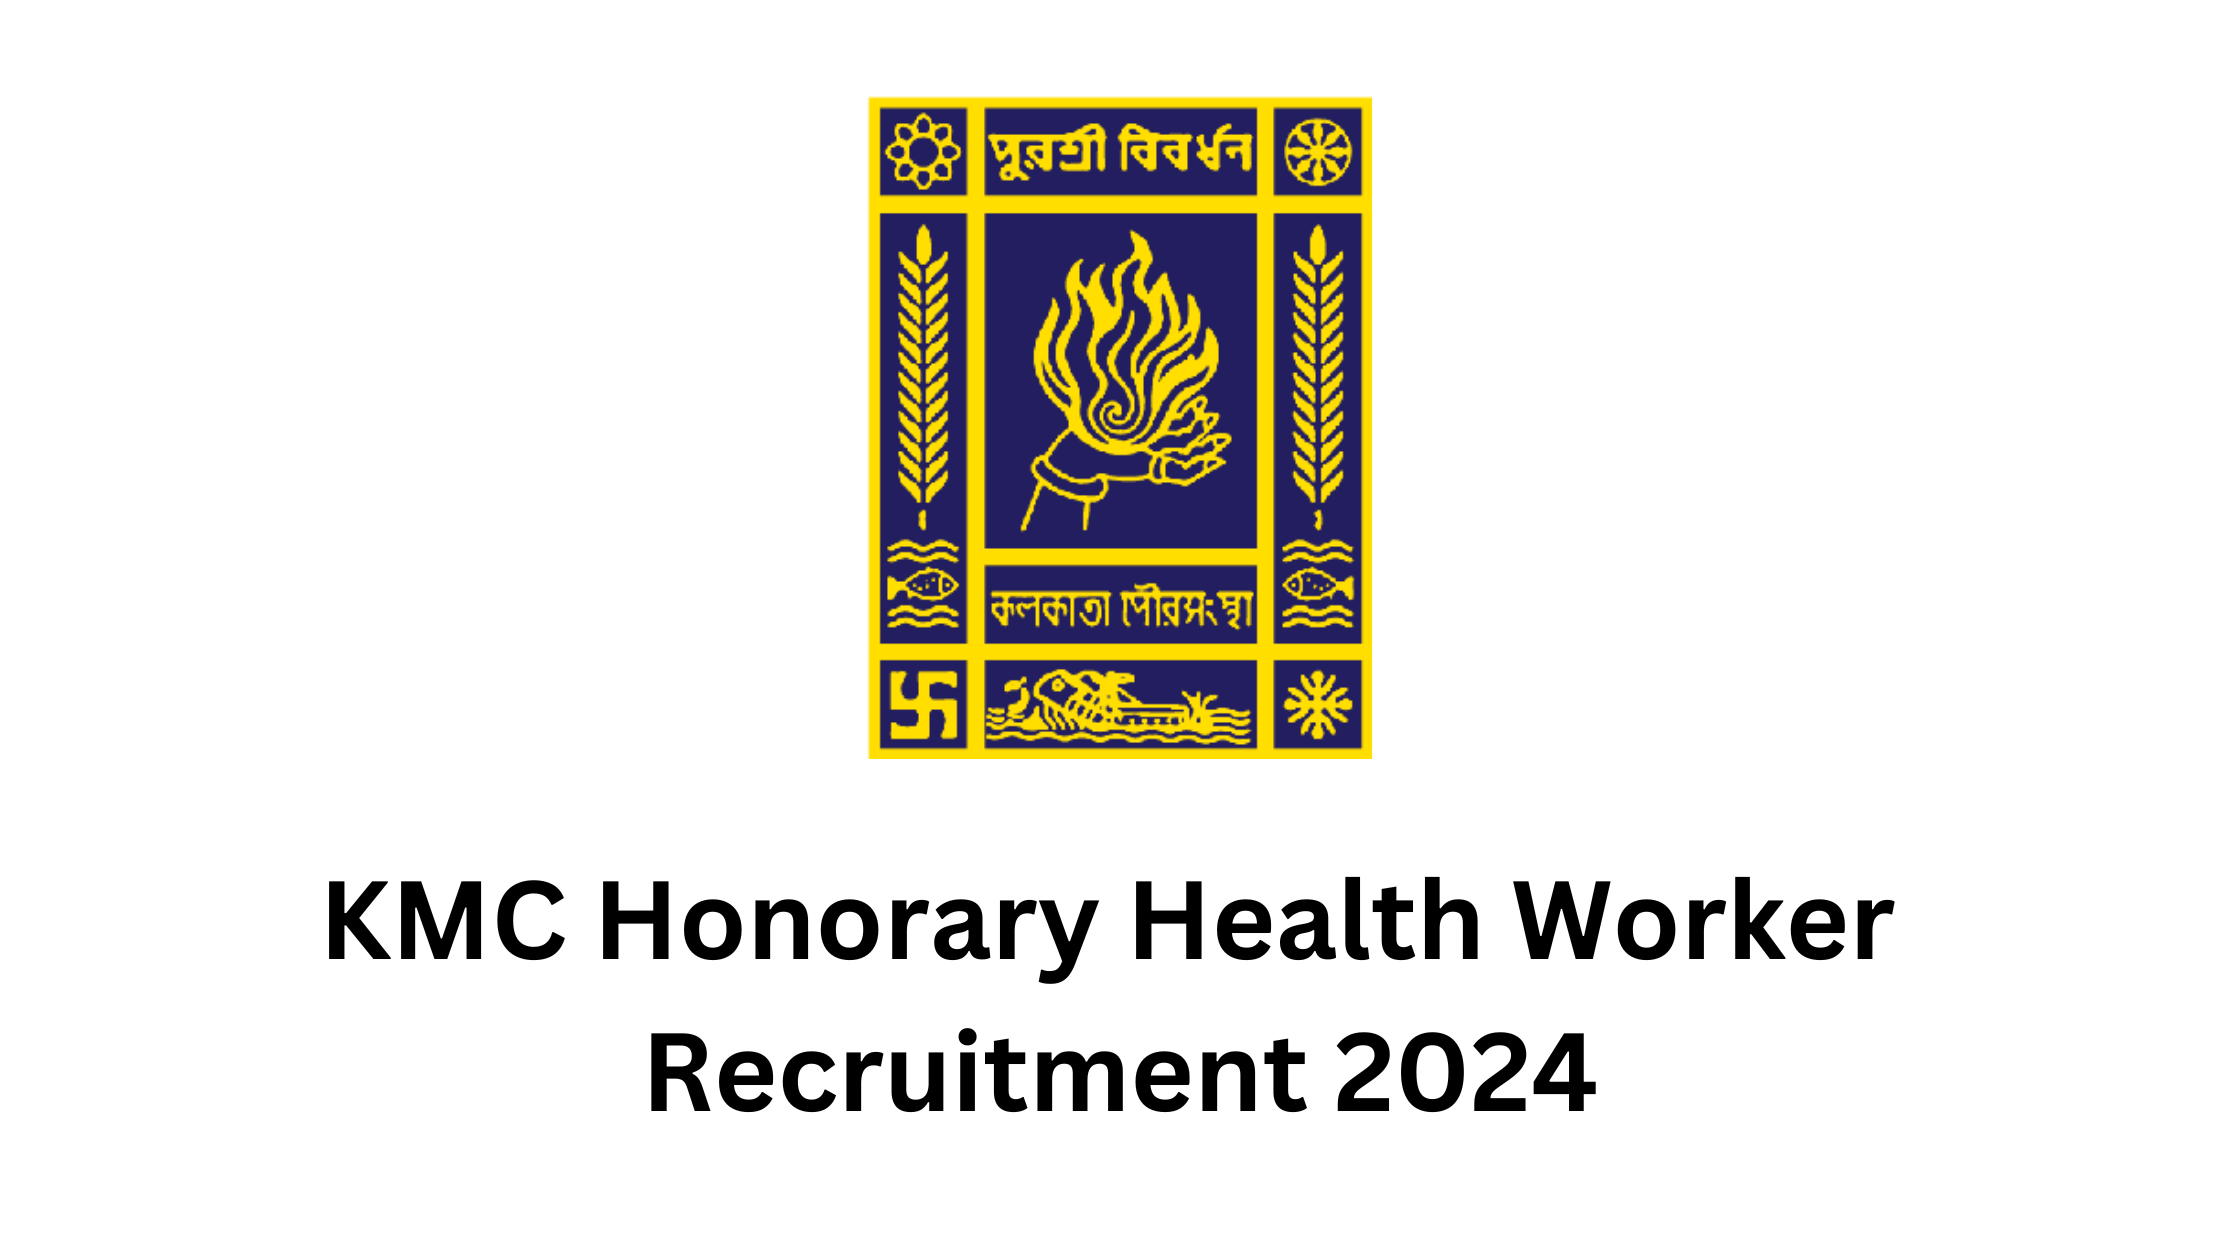 KMC Honorary Health Worker Recruitment 2024